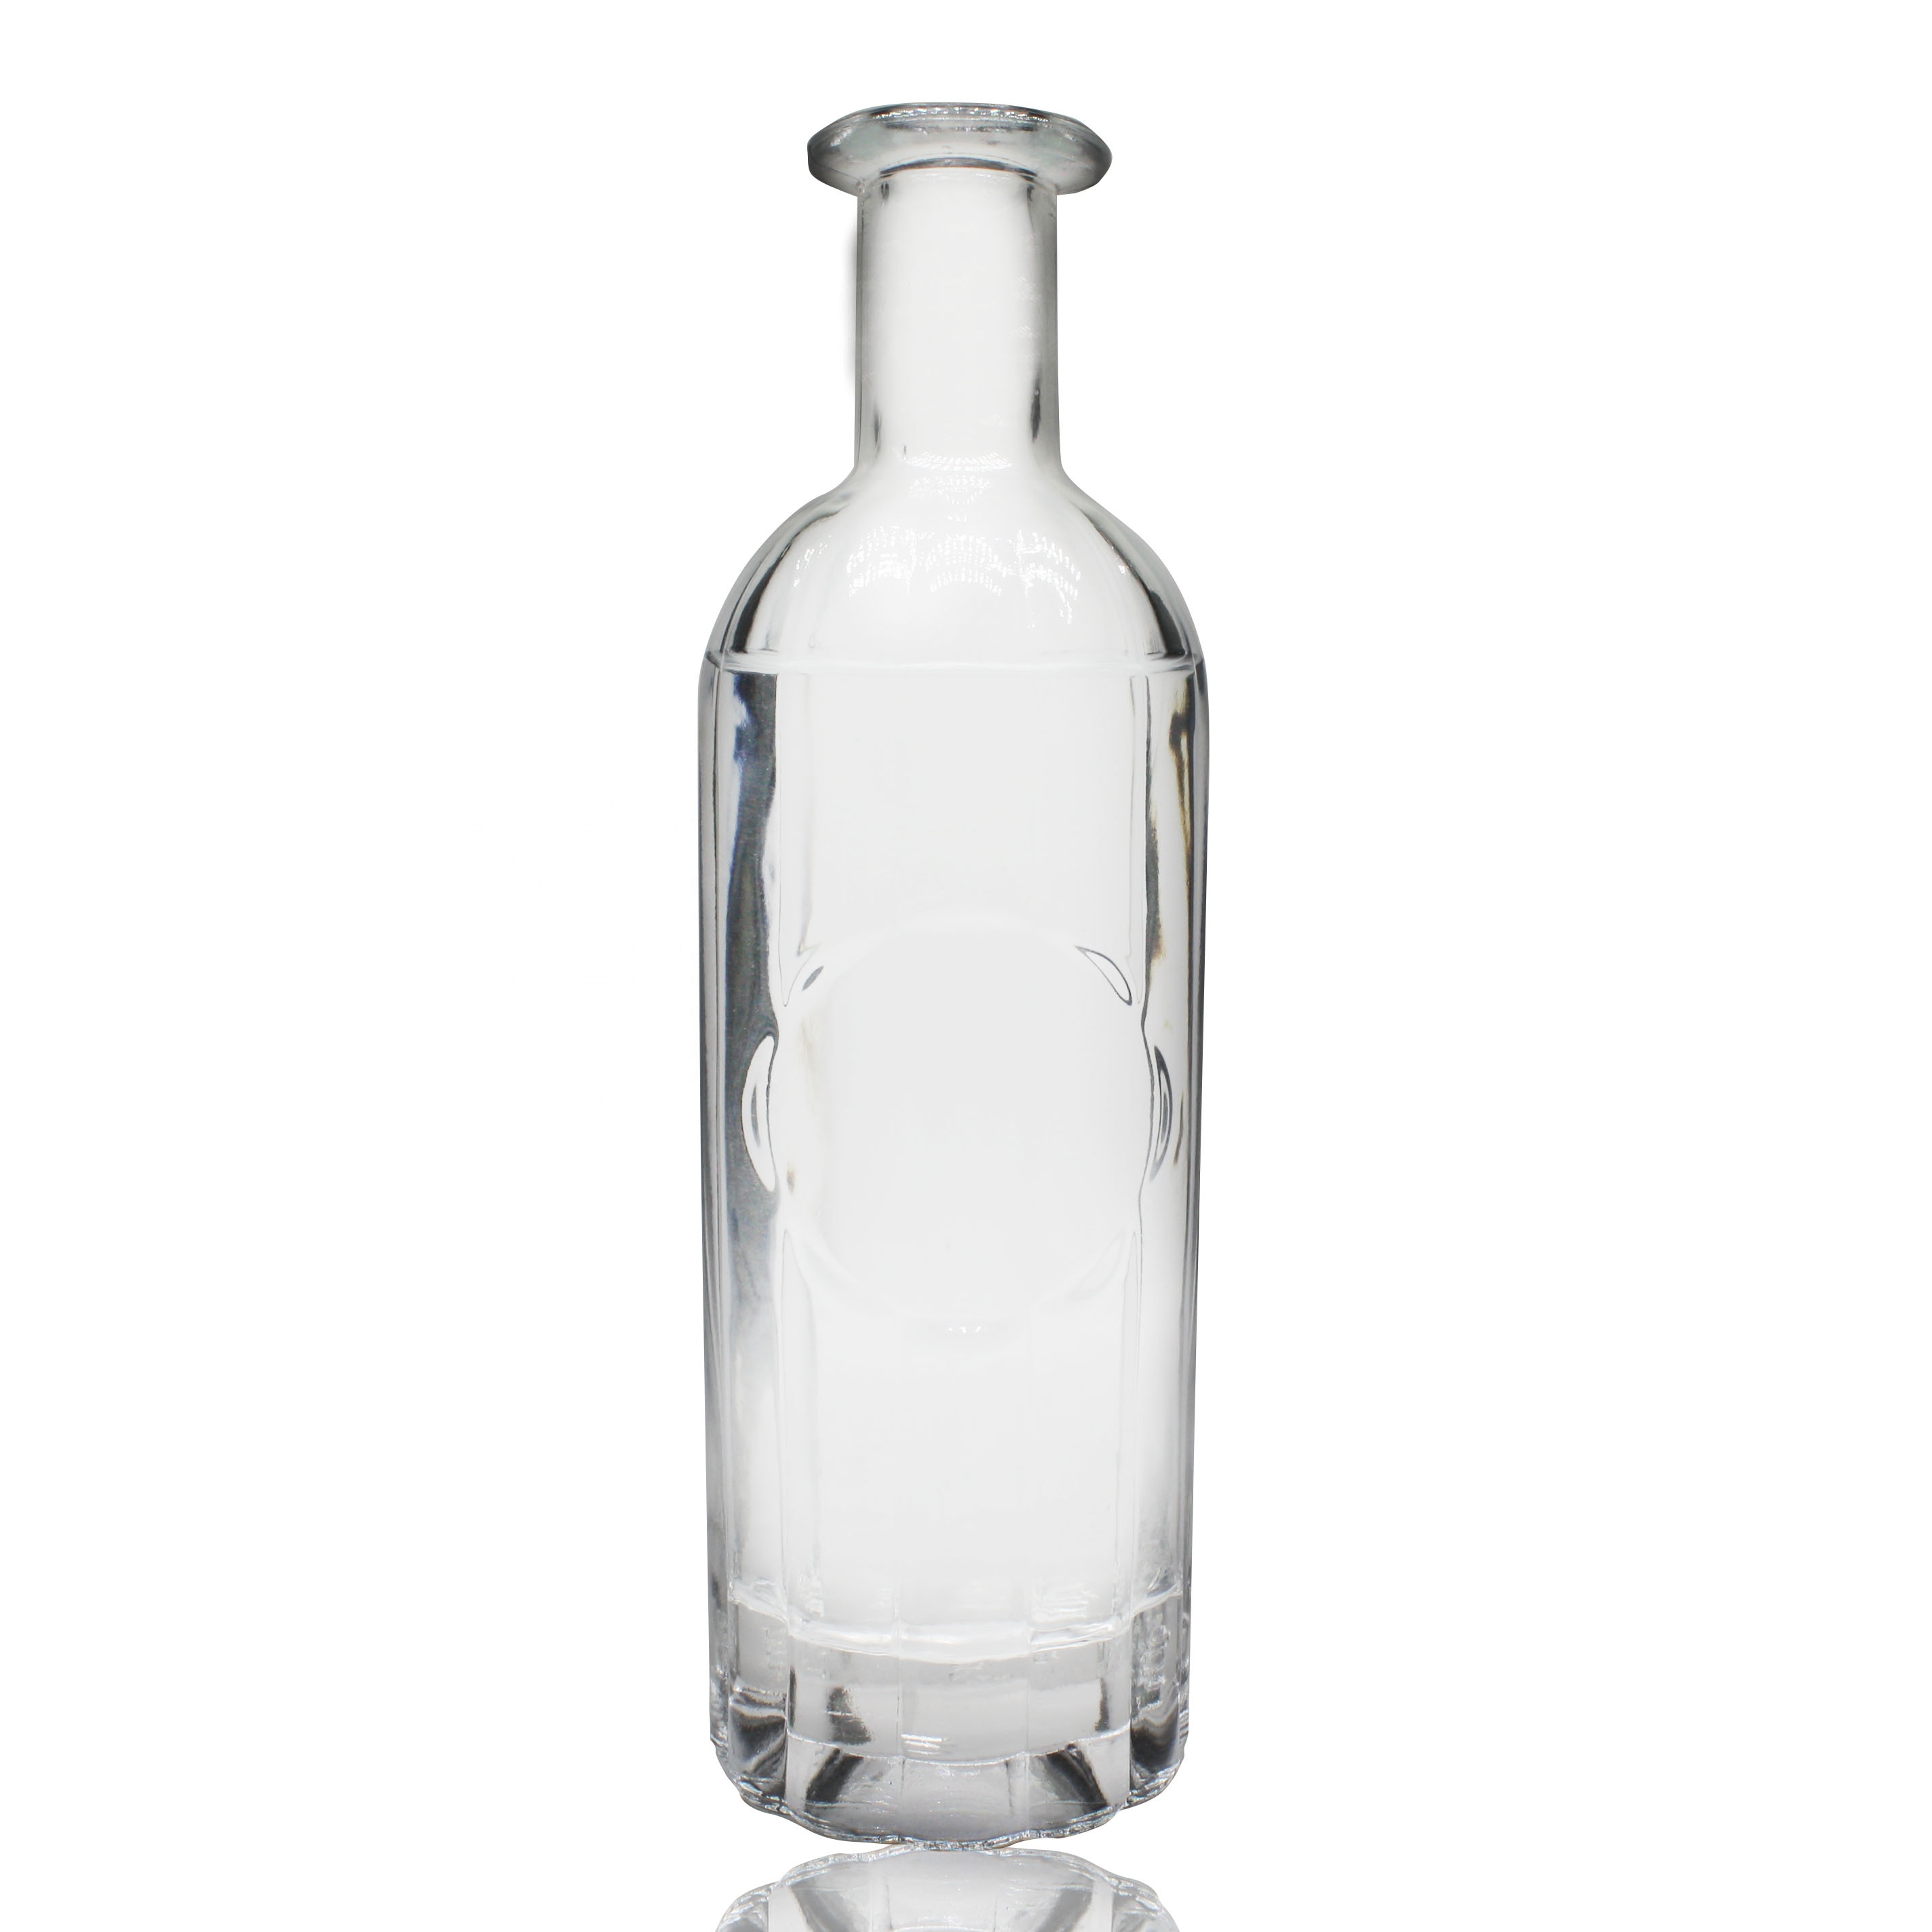 Special Unique Shaped Xo Cognac 500ml Glass Liquor Bottles